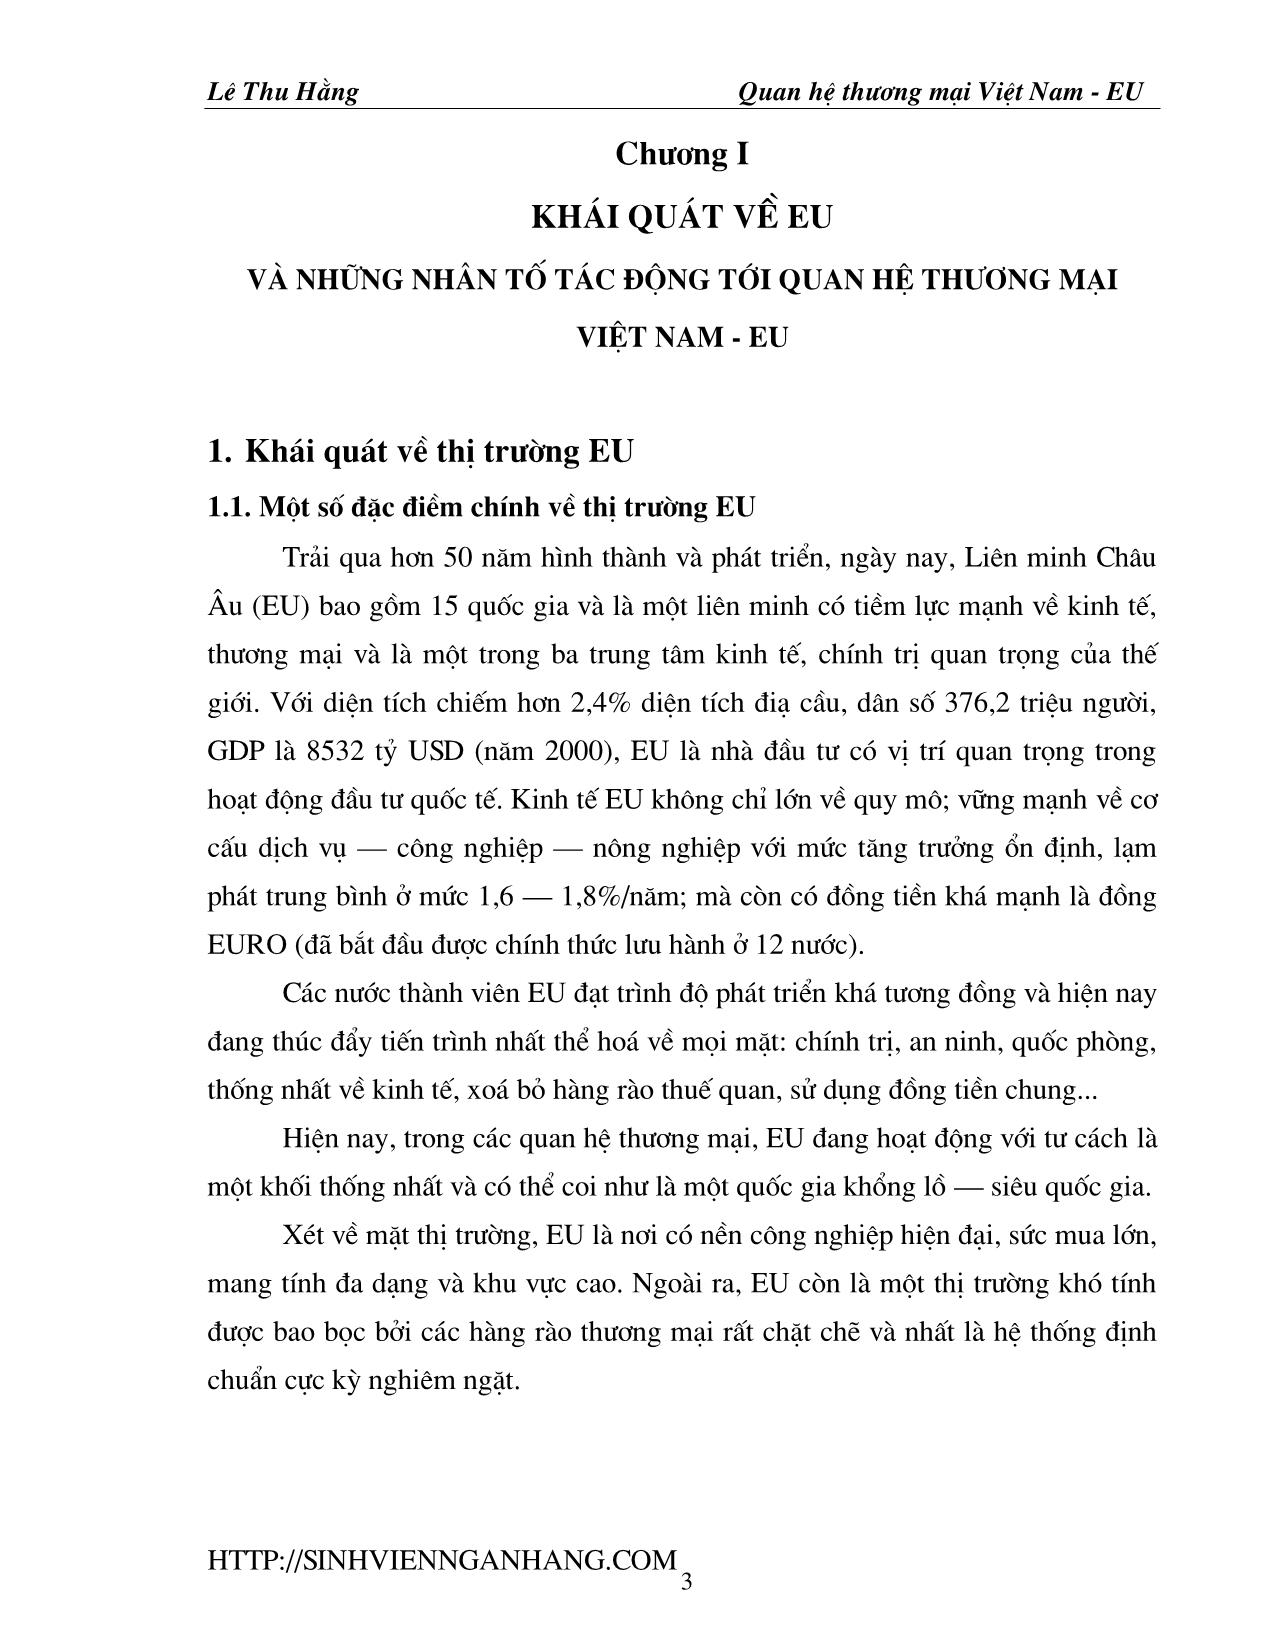 Đề tài Quan hệ thương mại Việt Nam - EU trang 3